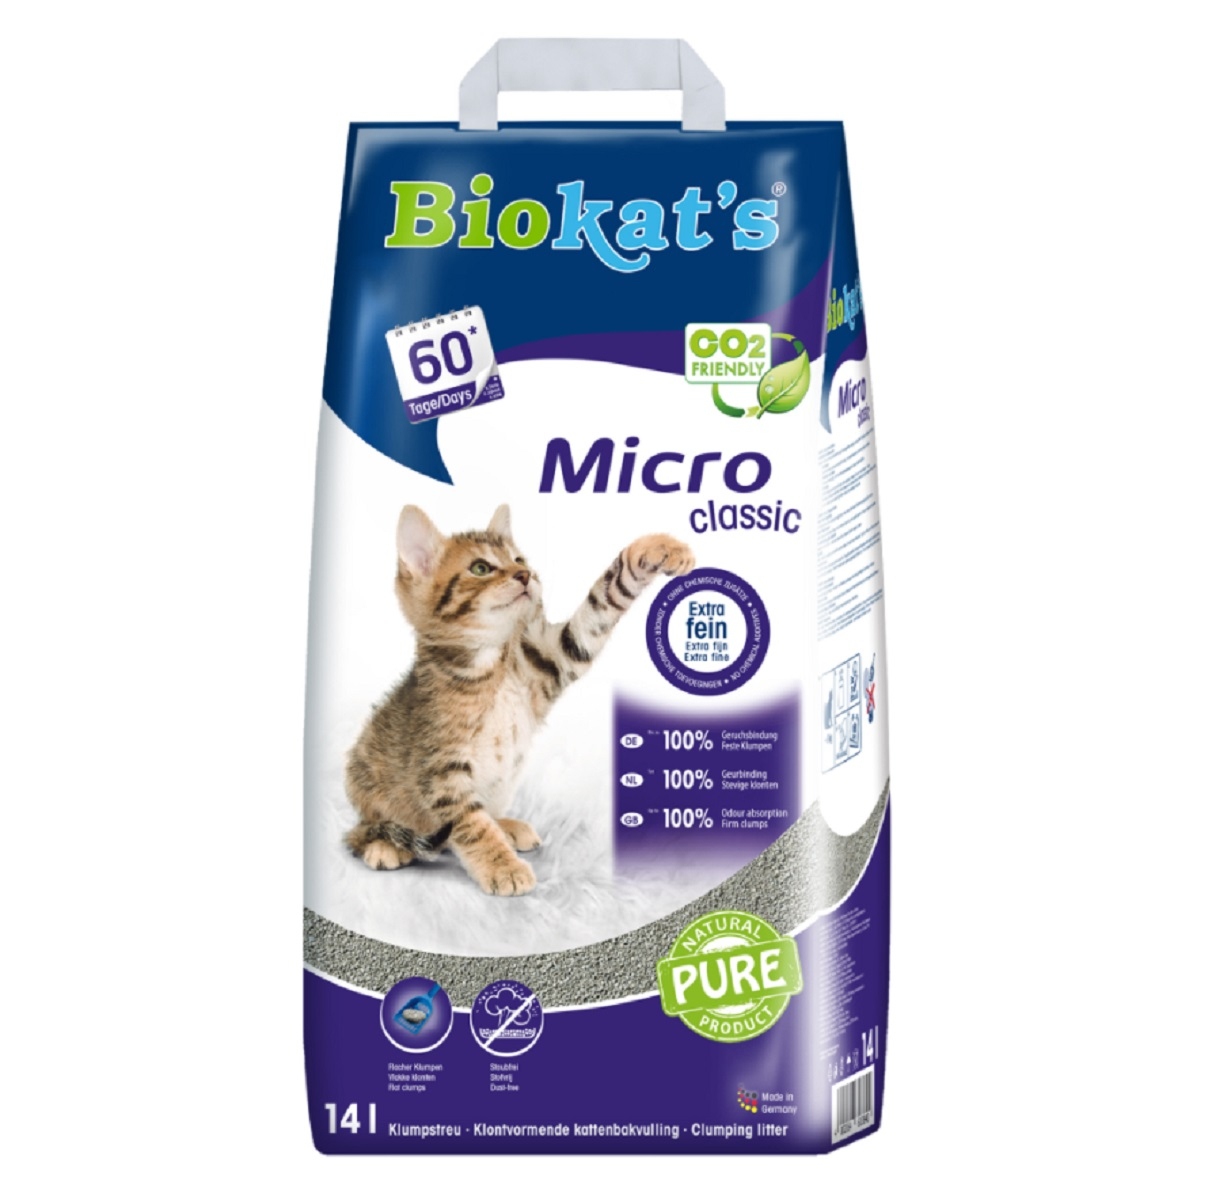 Biokat's Micro Classic Arena para gatos